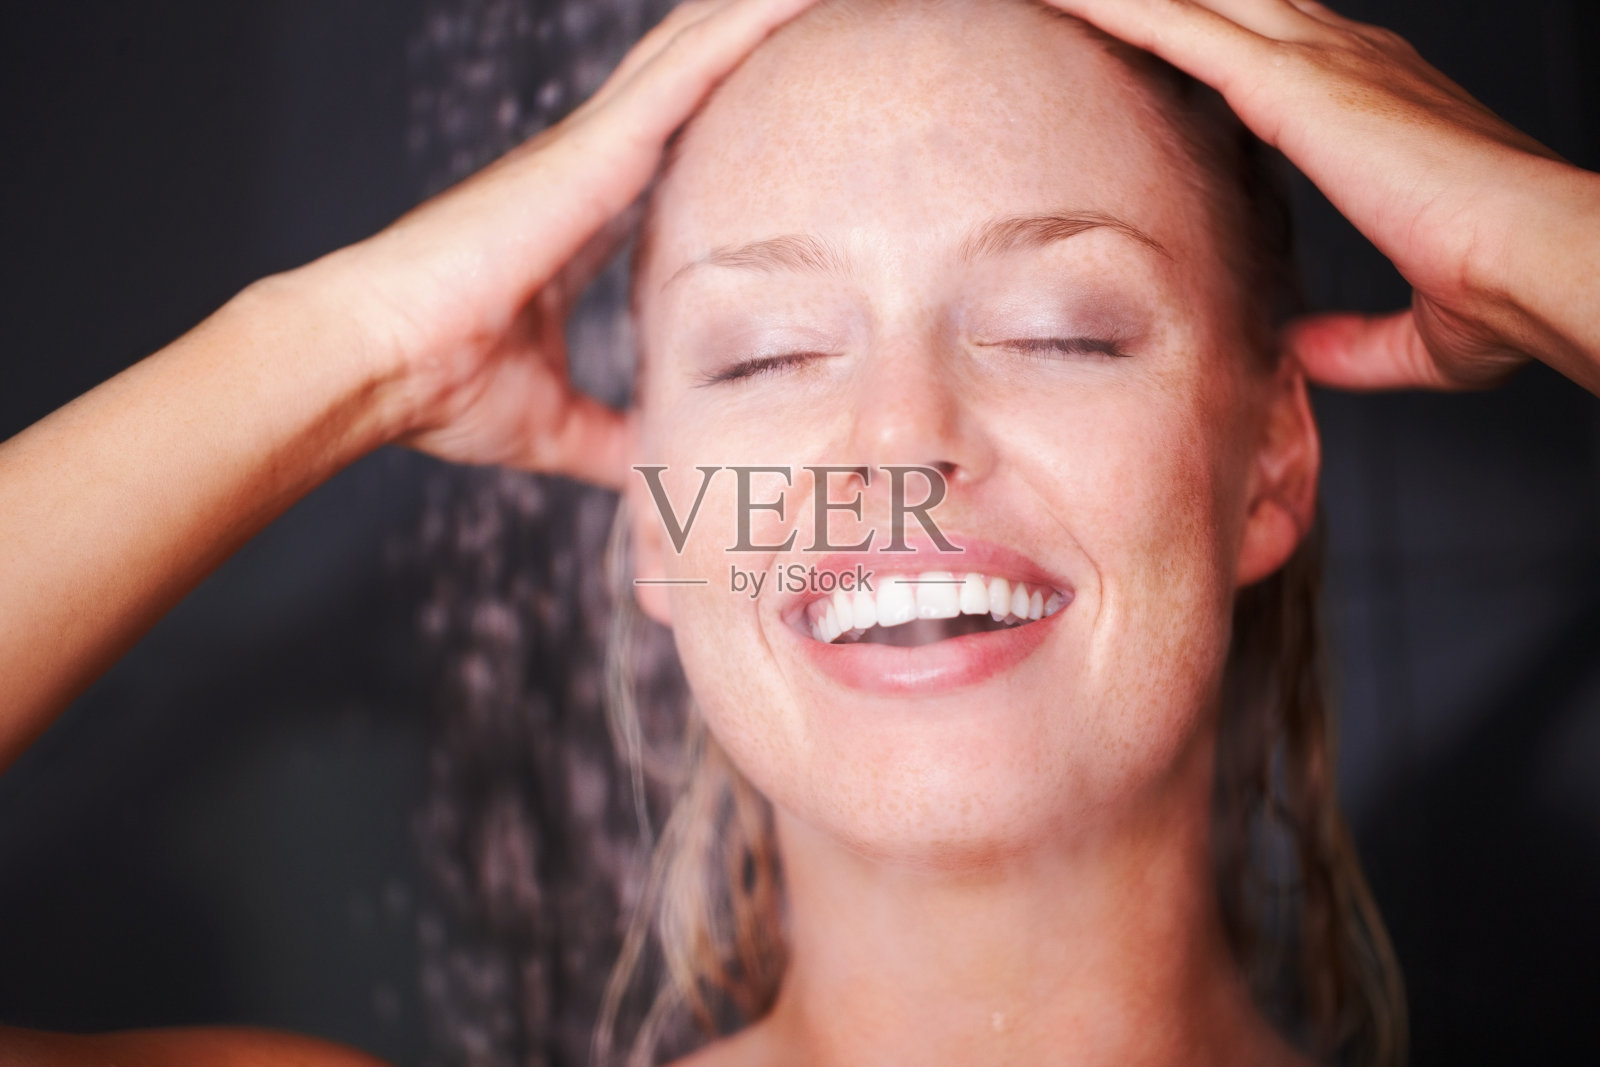 美女洗澡 库存照片、图片和摄影作品 | Shutterstock